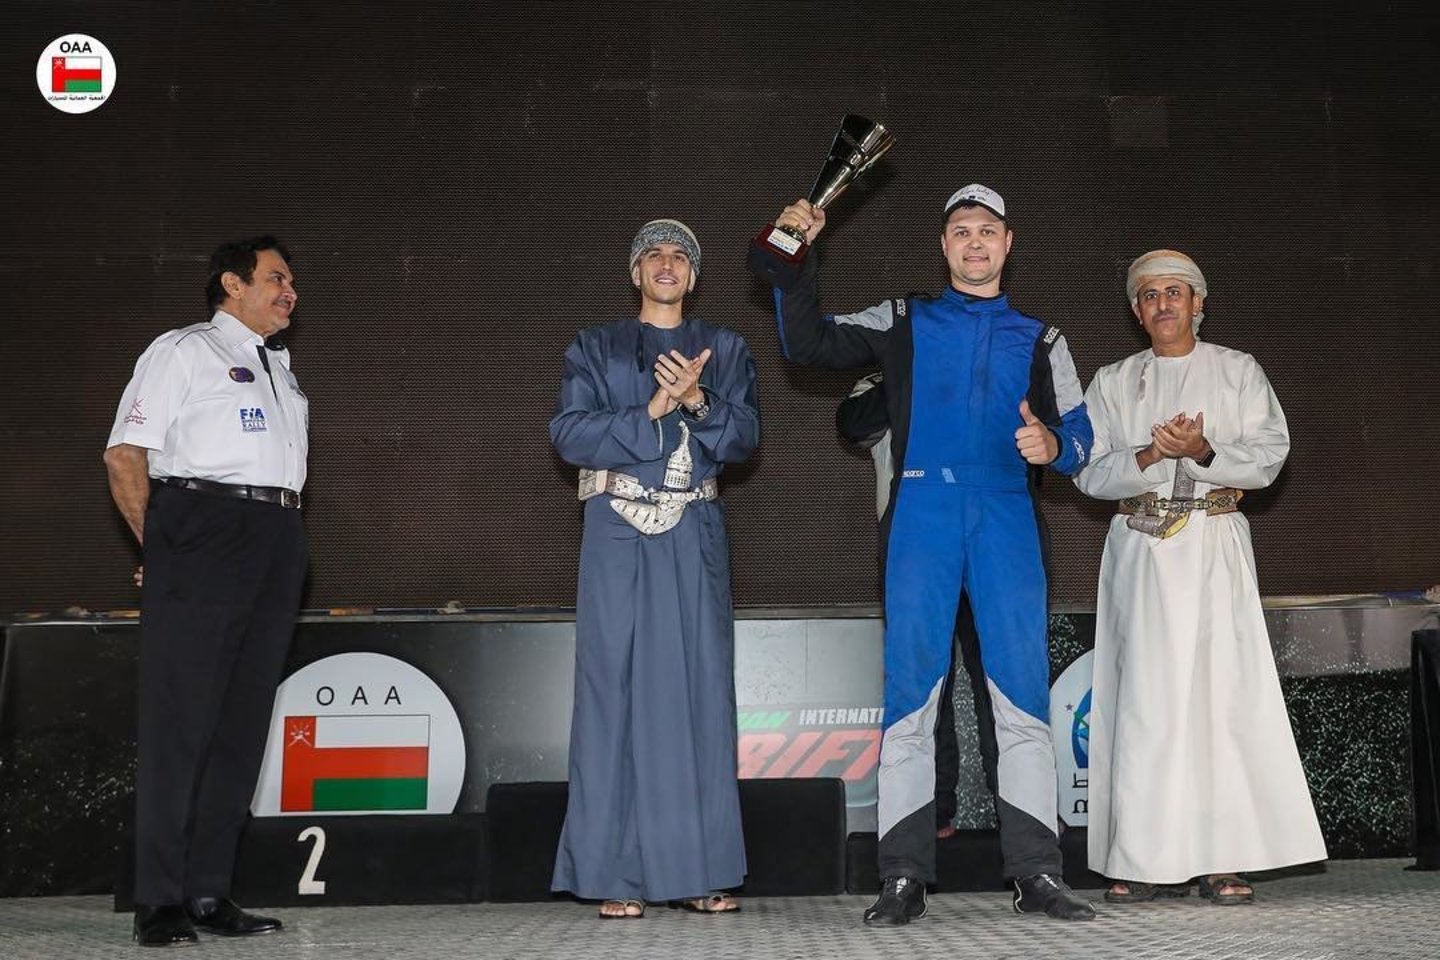  Andrius Vasiliauskas Omane įveikė garsiausius šonaslydžio sportininkus ir nusileido tik Jamesui Deane.<br> Organizatorių nuotr.